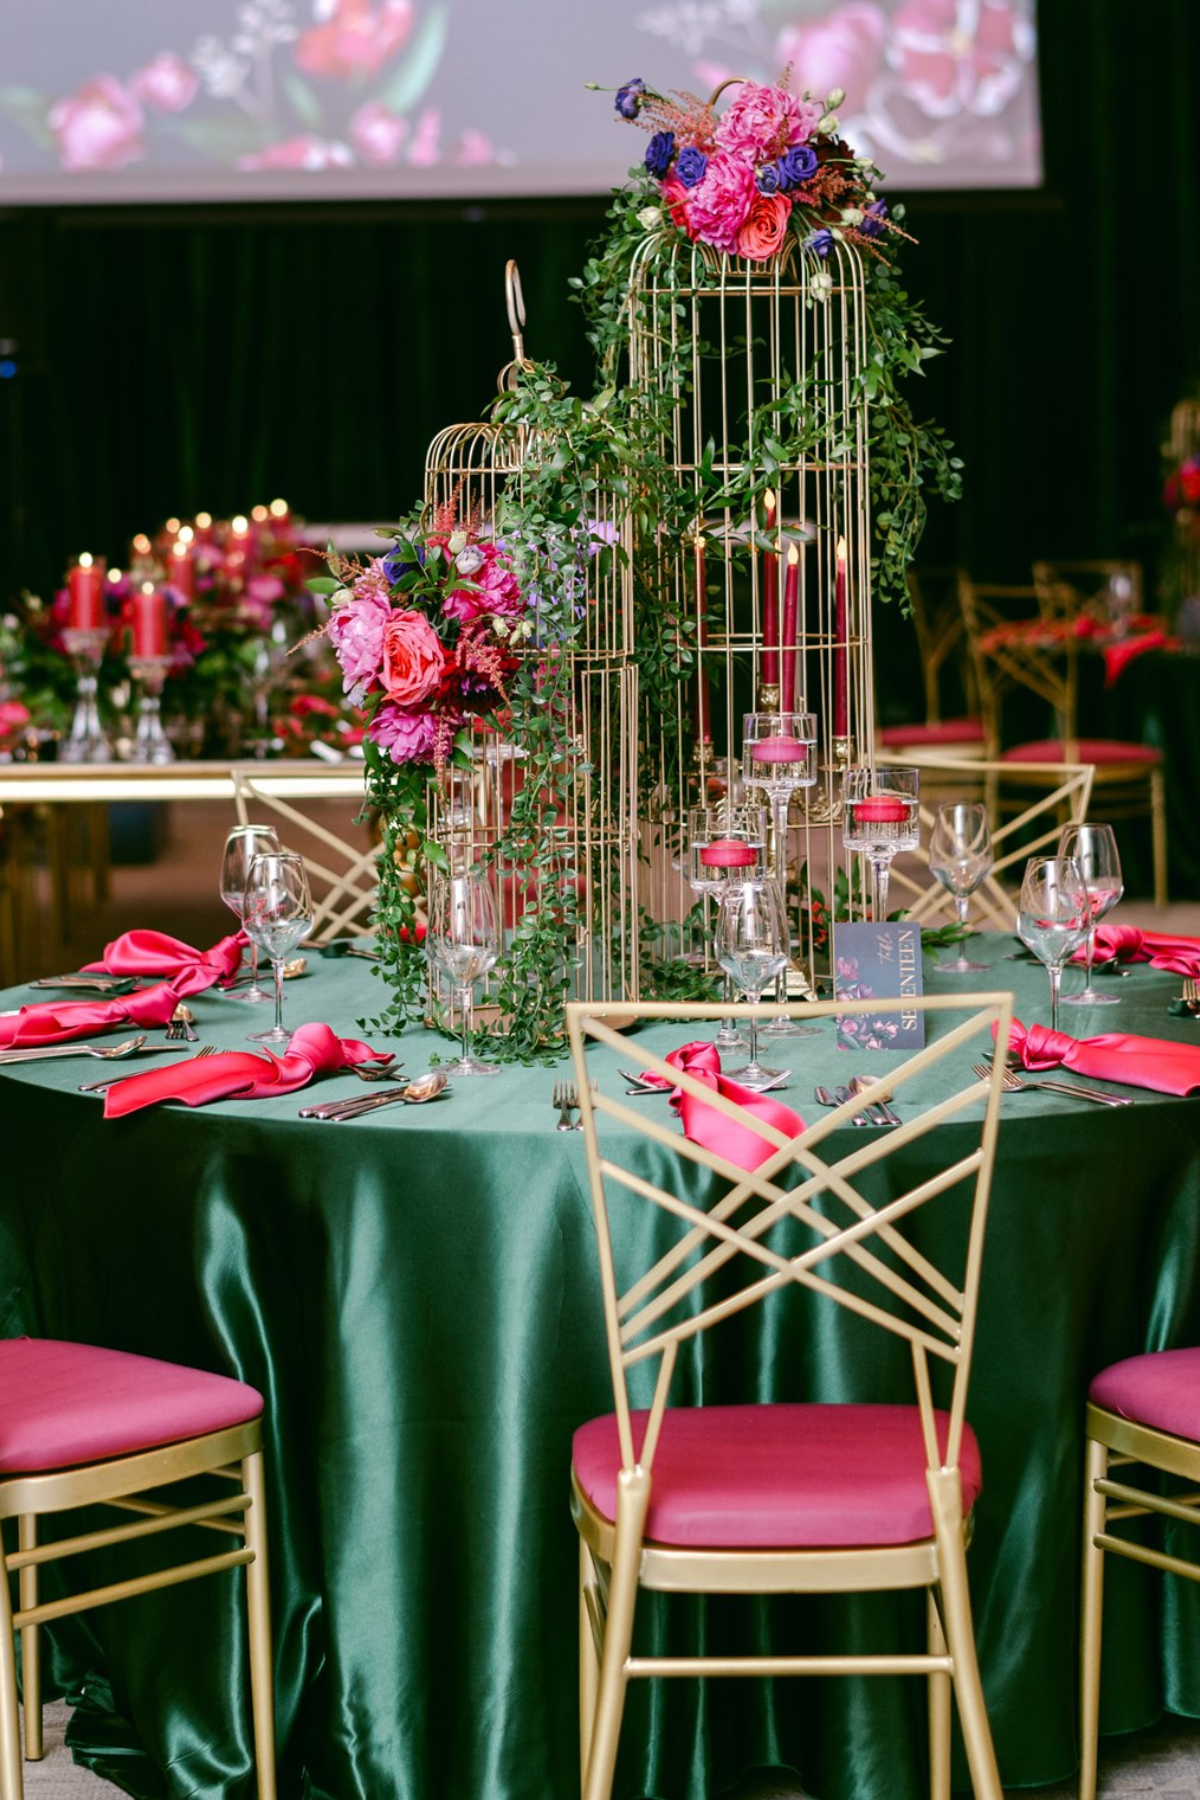 secret-garden-wedding-reception-greenery-pink-purple-gold-chair-birdcage-centerpiece